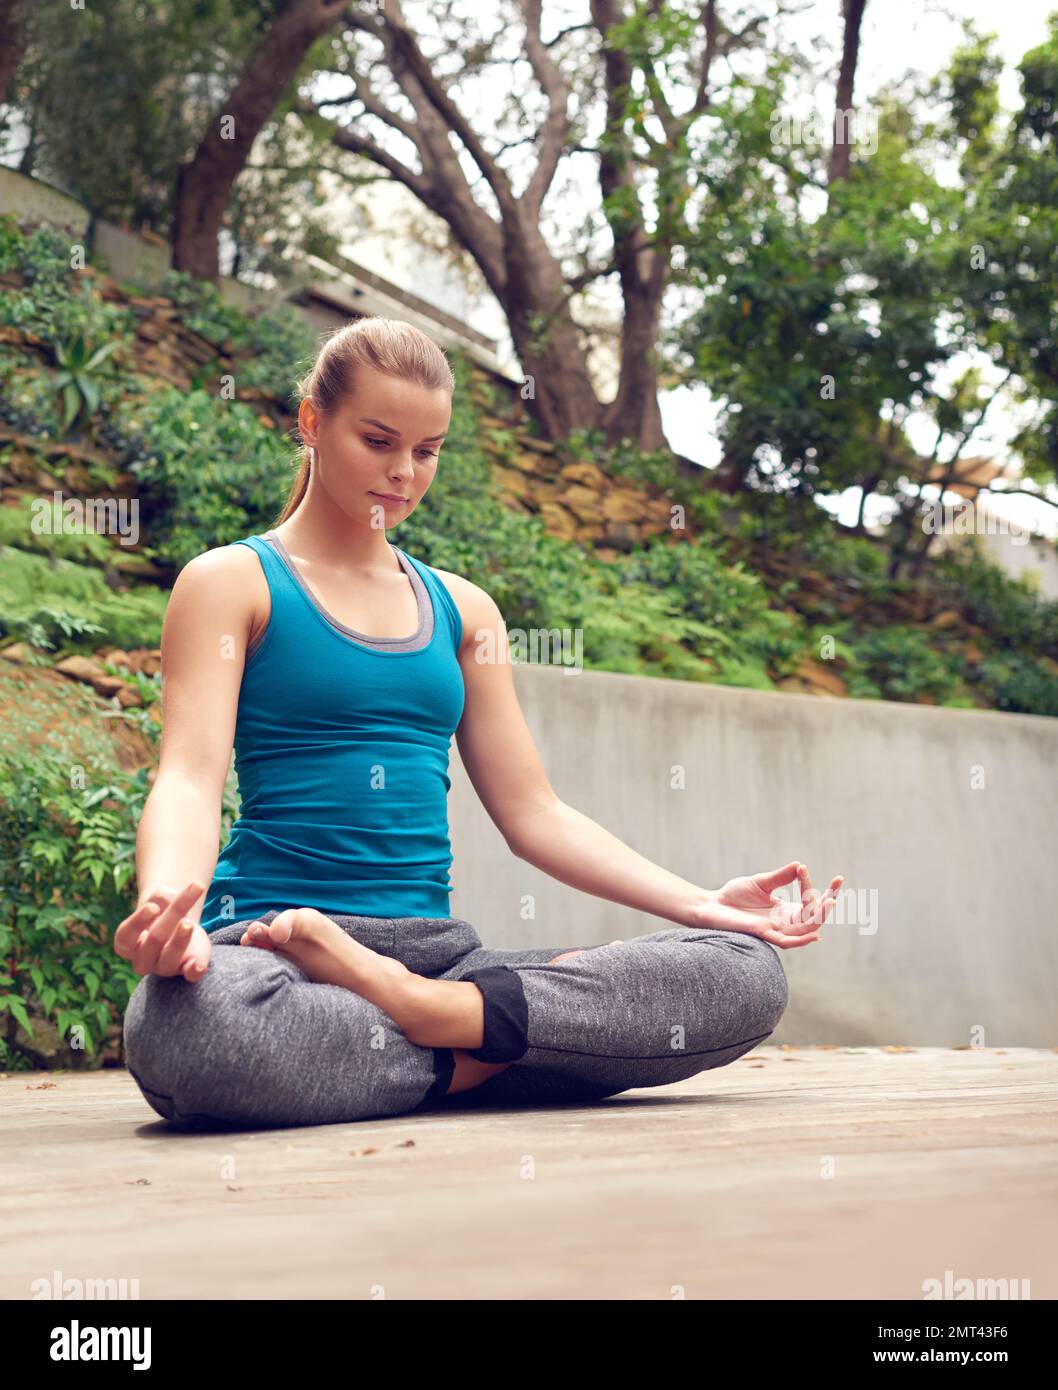 Je leiser du bist, desto mehr hörst du. Eine junge Frau, die draußen Yoga praktiziert. Stockfoto